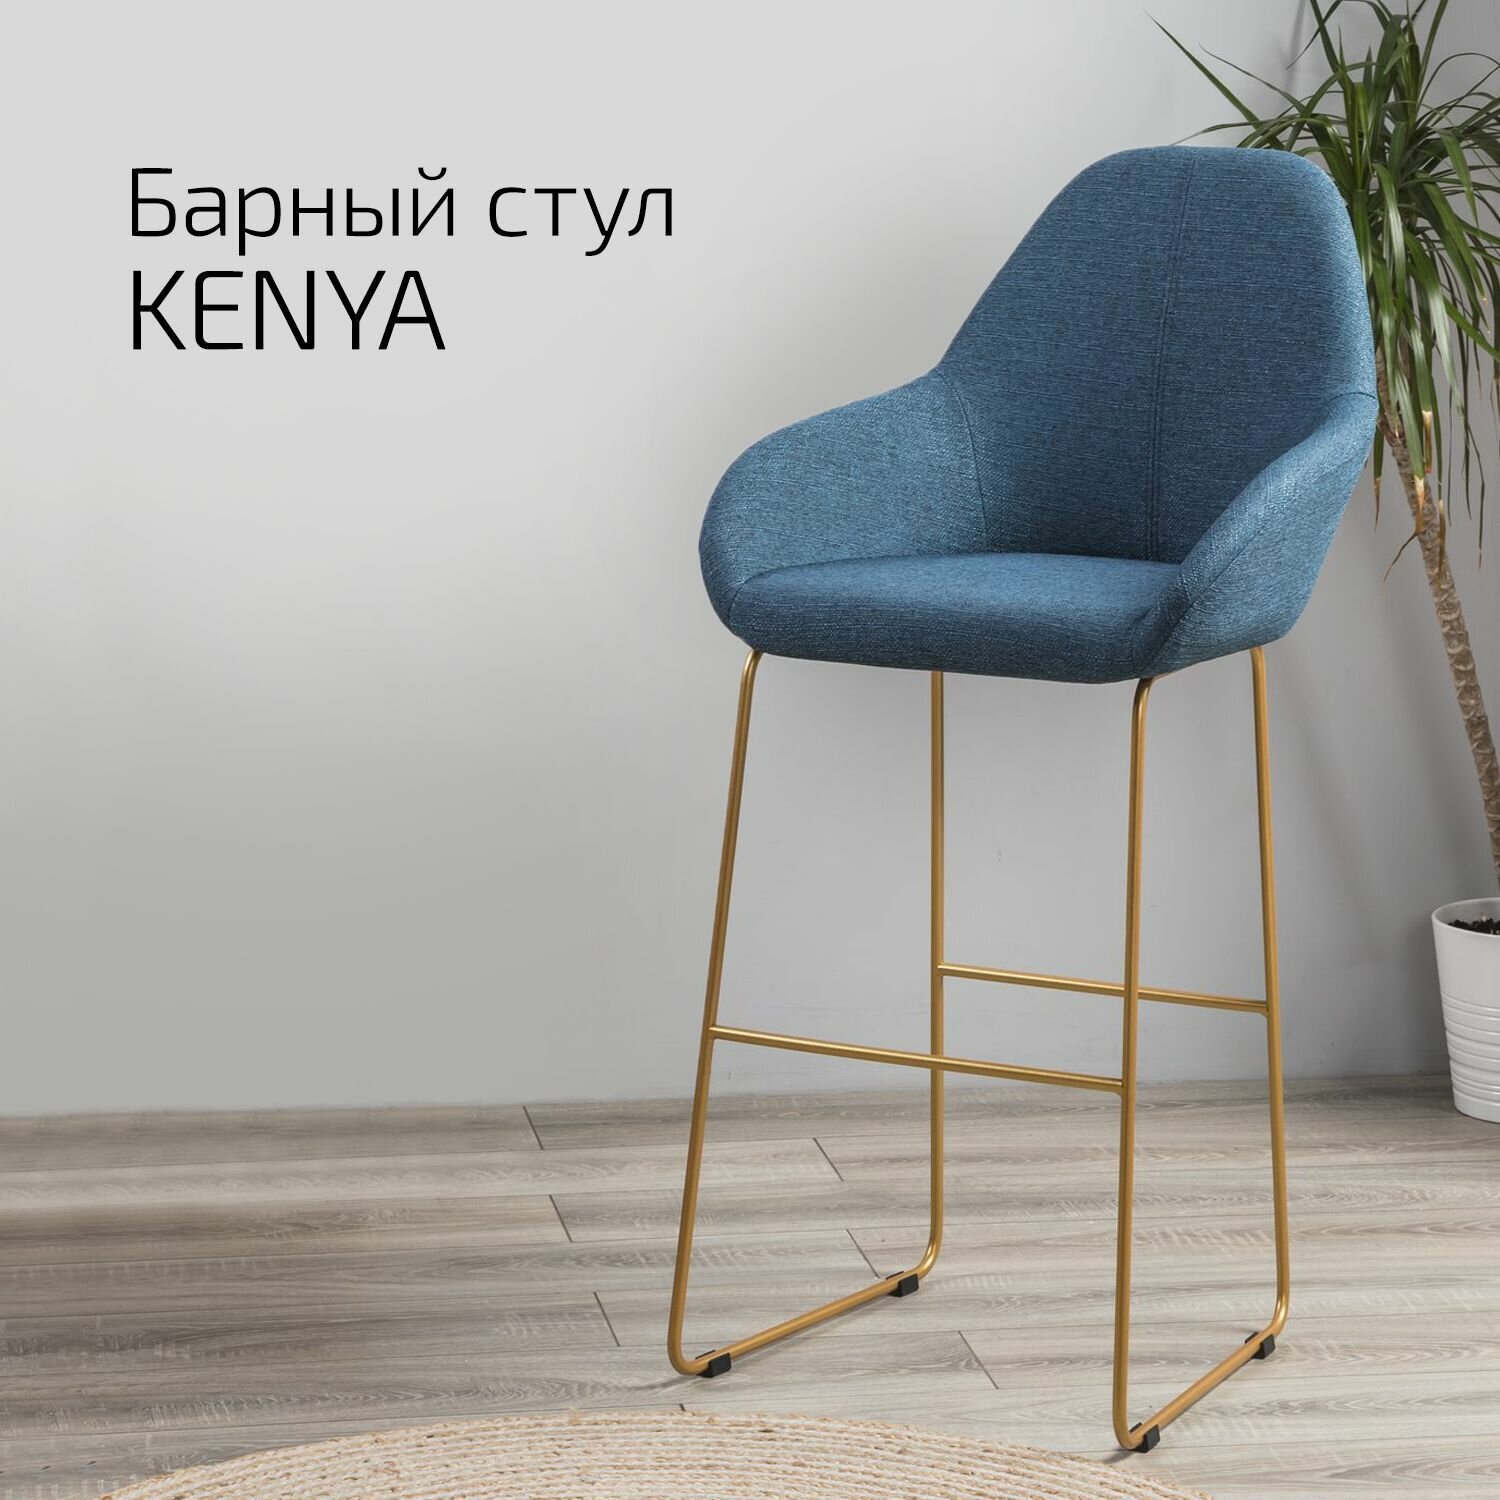 Кресло Бар Kenya БлюАрт/Линк Золото